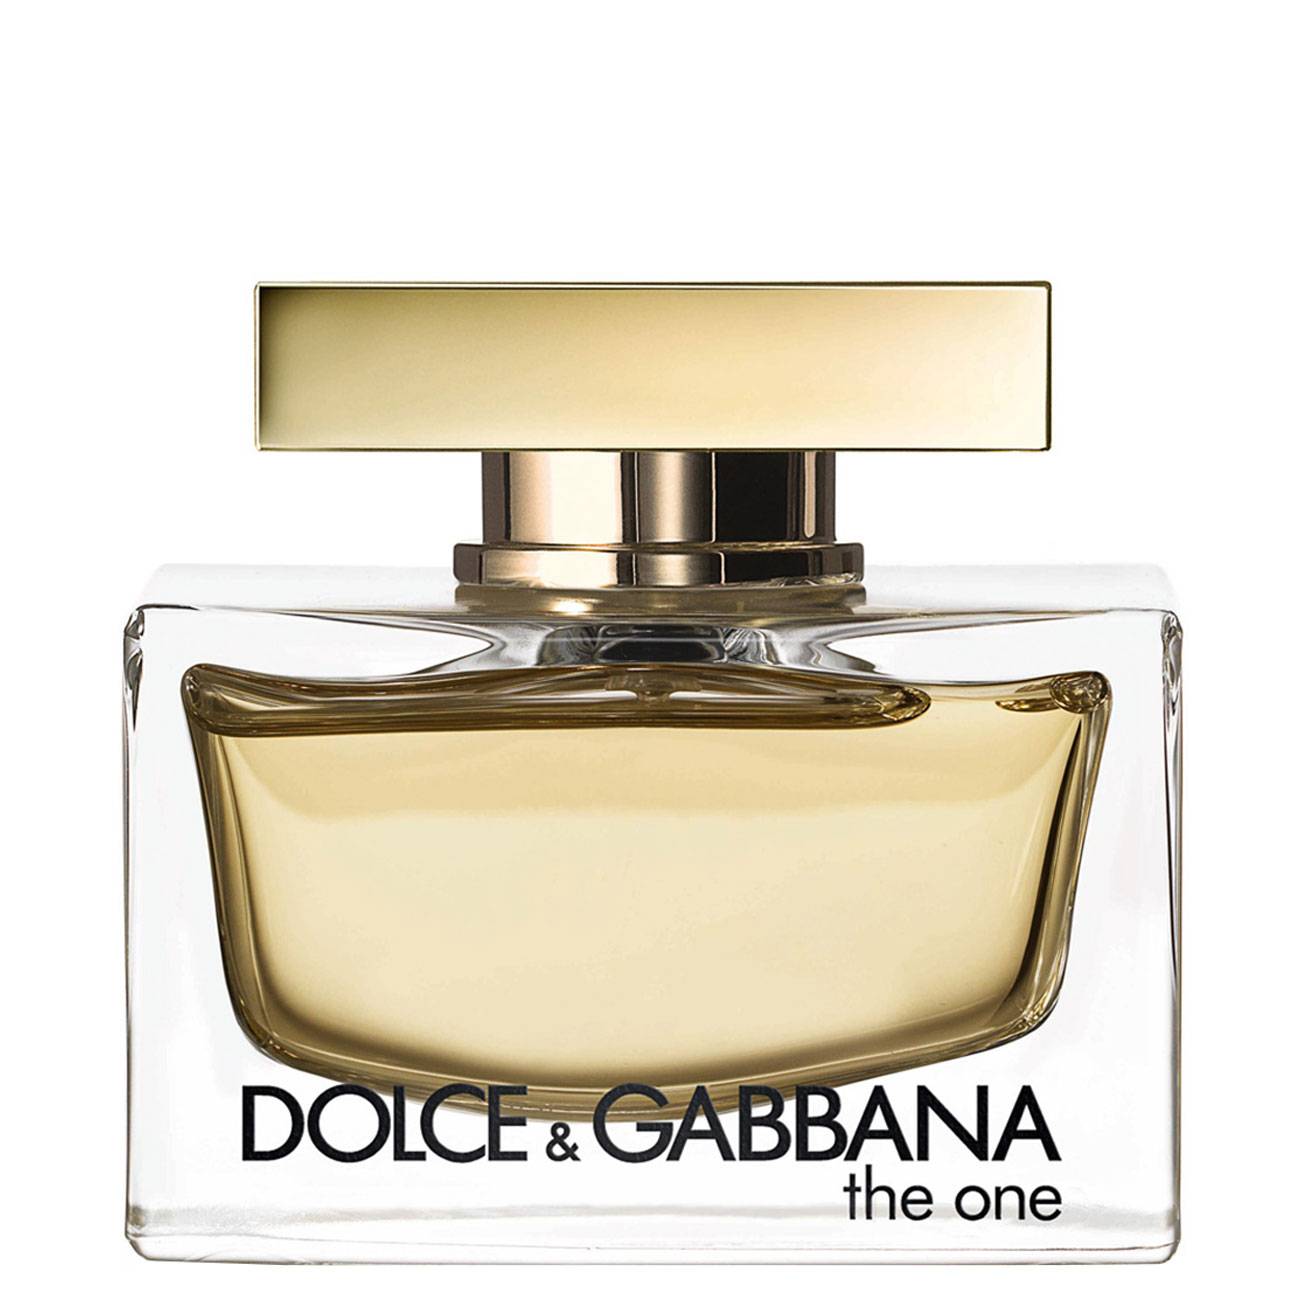 THE ONE 75ml Dolce & Gabbana bestvalue.eu imagine noua